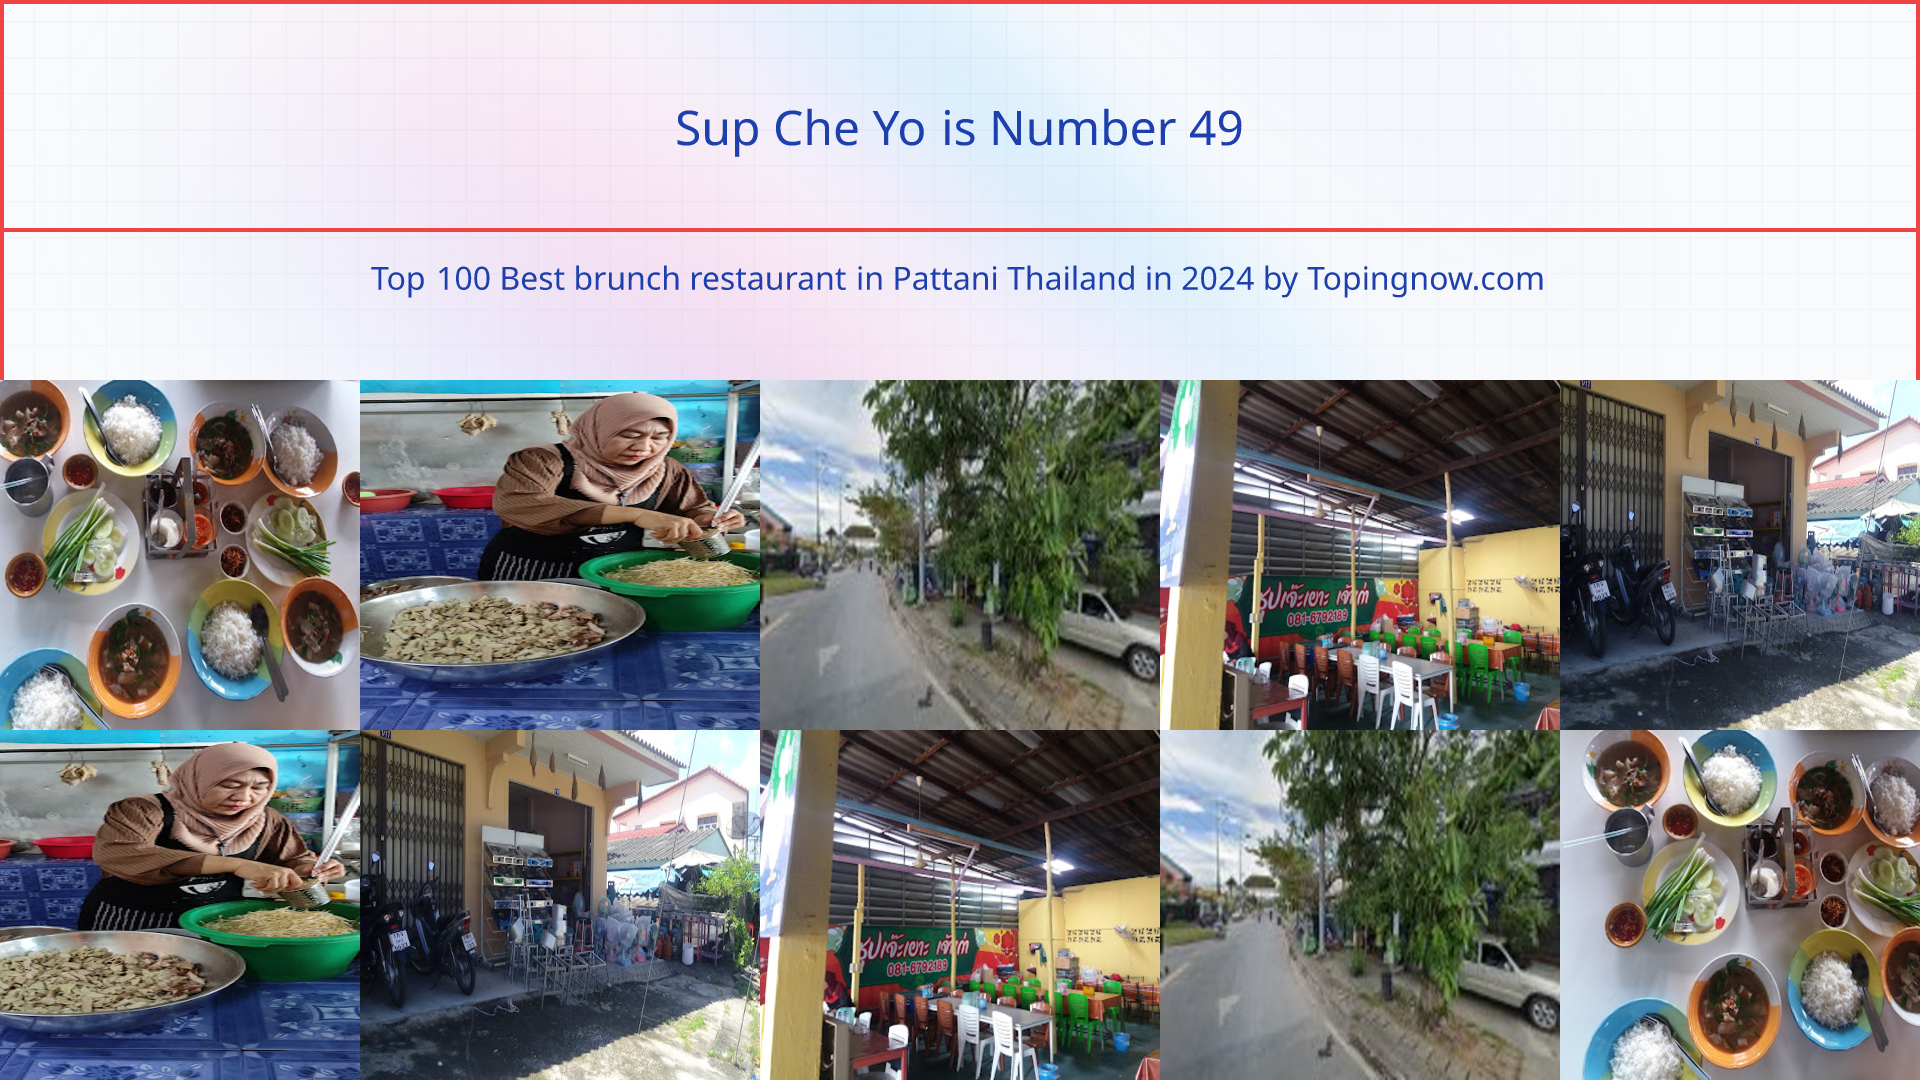 Sup Che Yo: Top 100 Best brunch restaurant in Pattani Thailand in 2024